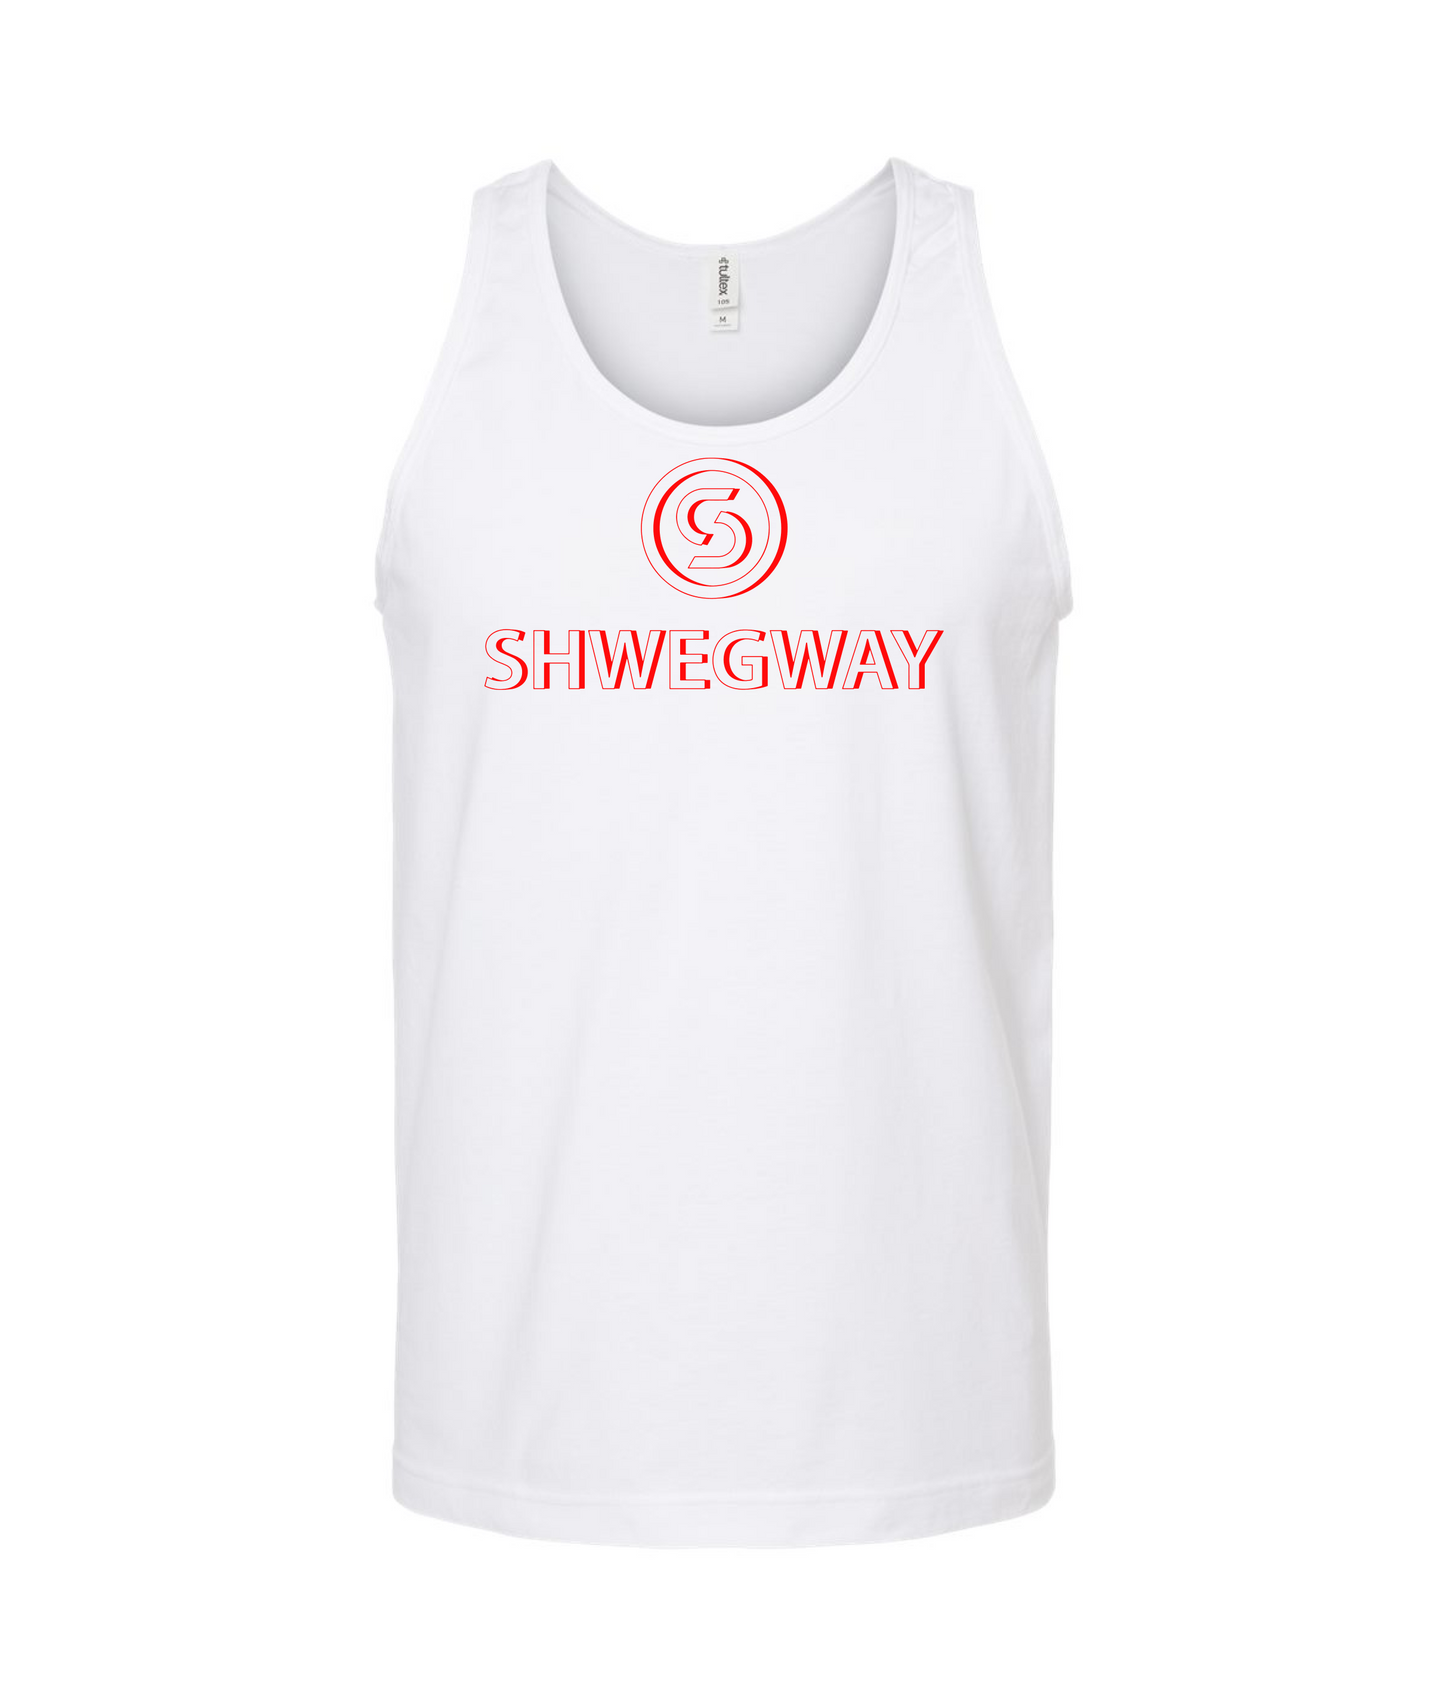 Shwegway Inc. - Logo - White Tank Top